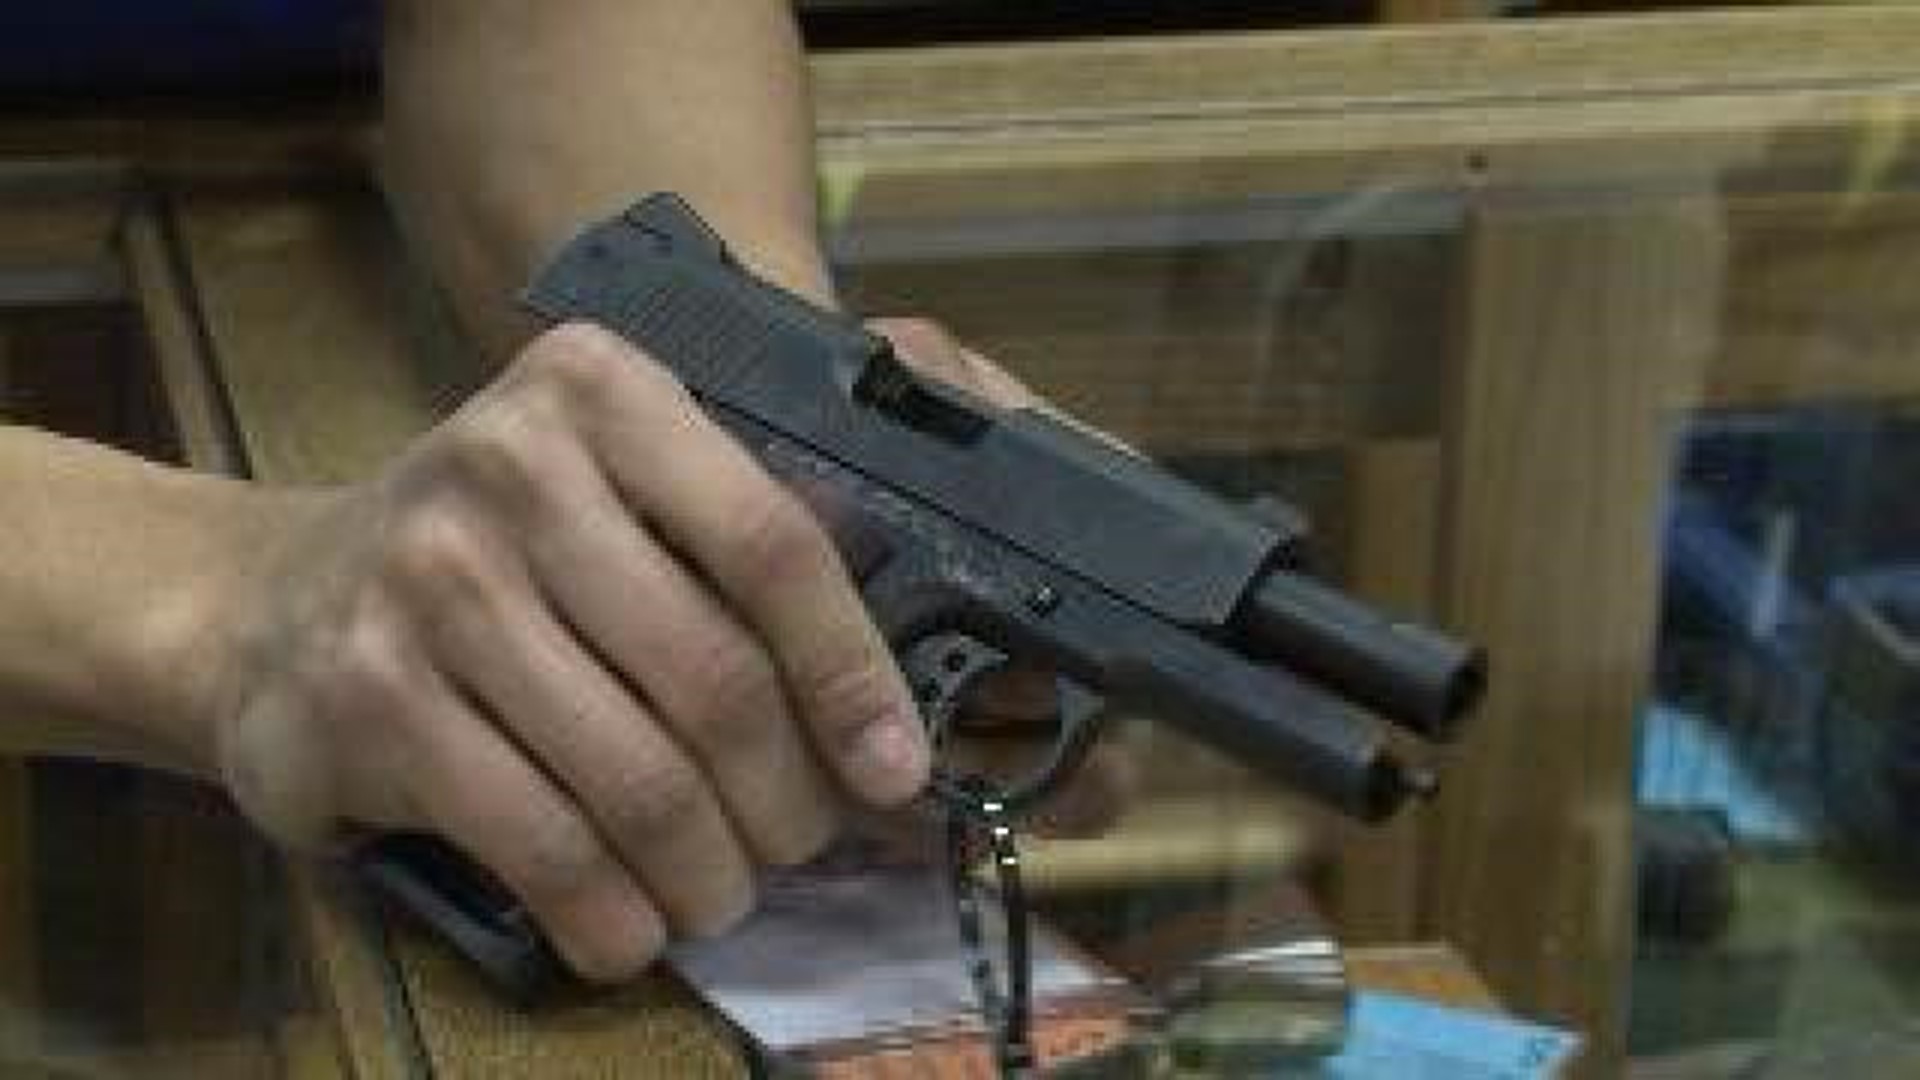 Under-21 Handgun Ban Upheld in Court